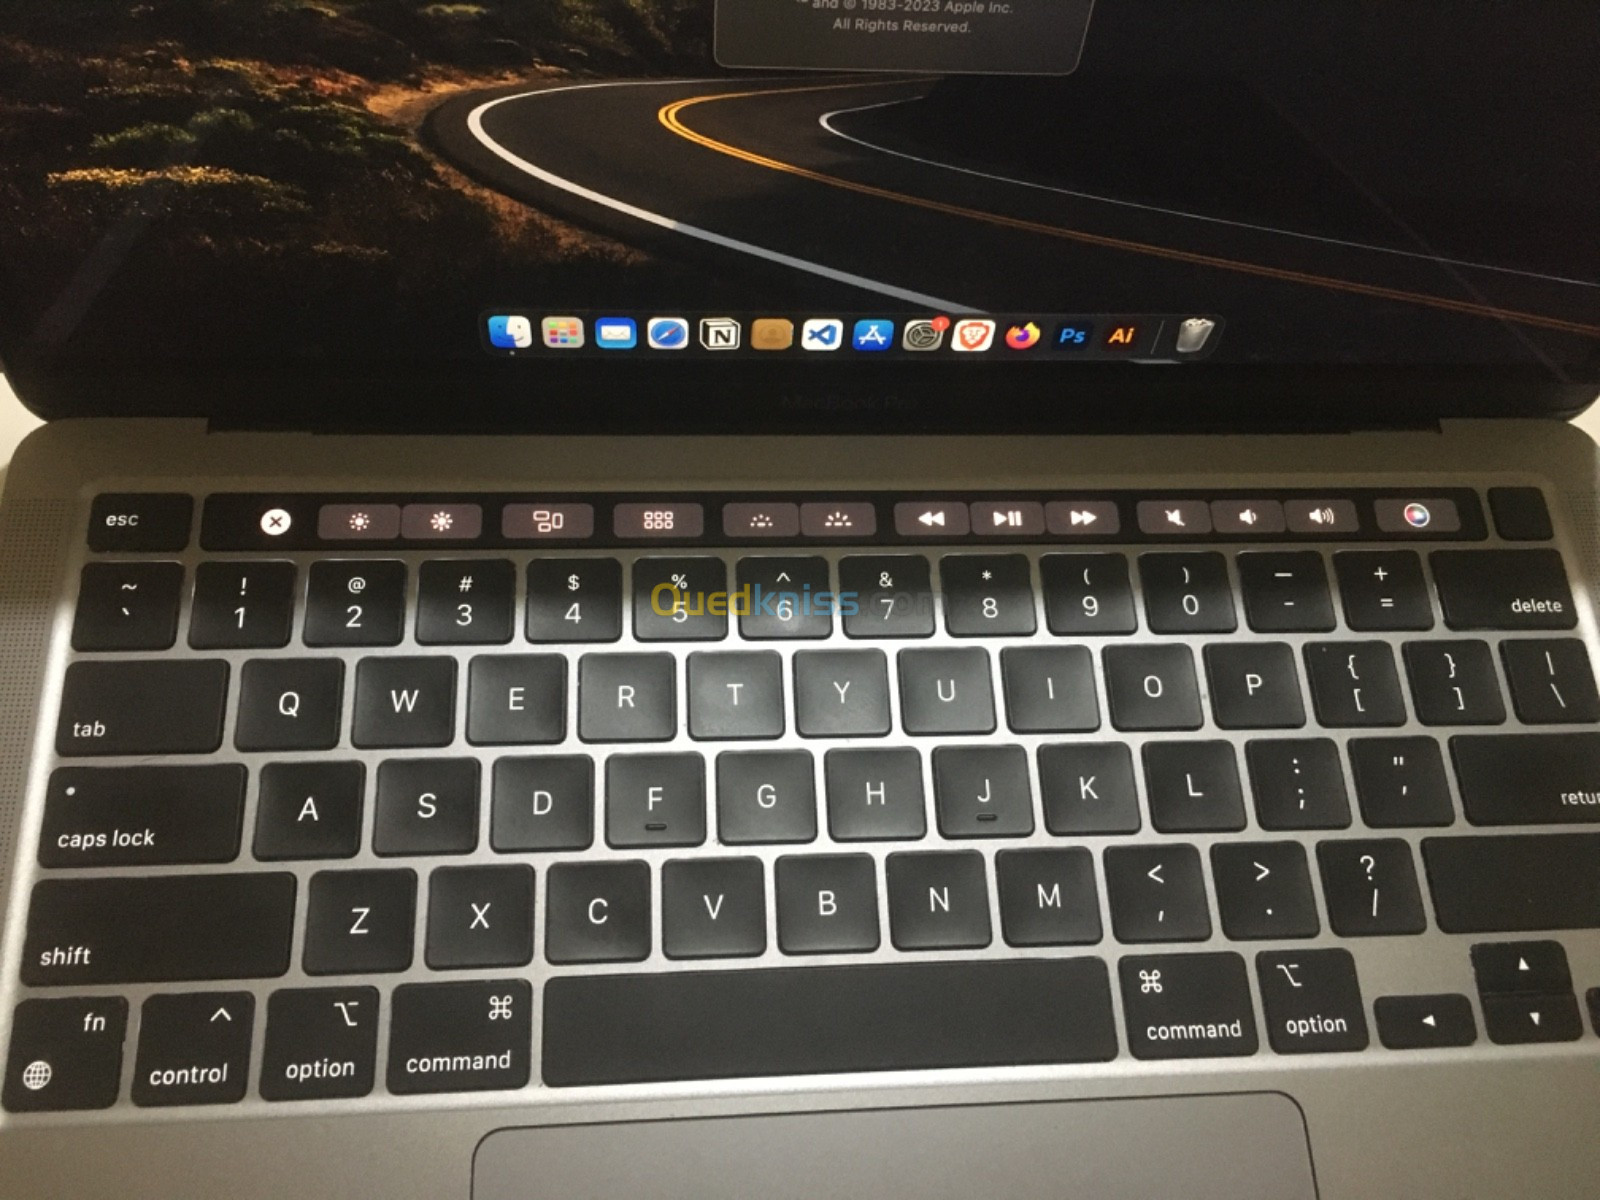 専用ほぼ未使用品 放電回数11回 箱つき美品 MacBook Pro 13 - MacBook本体